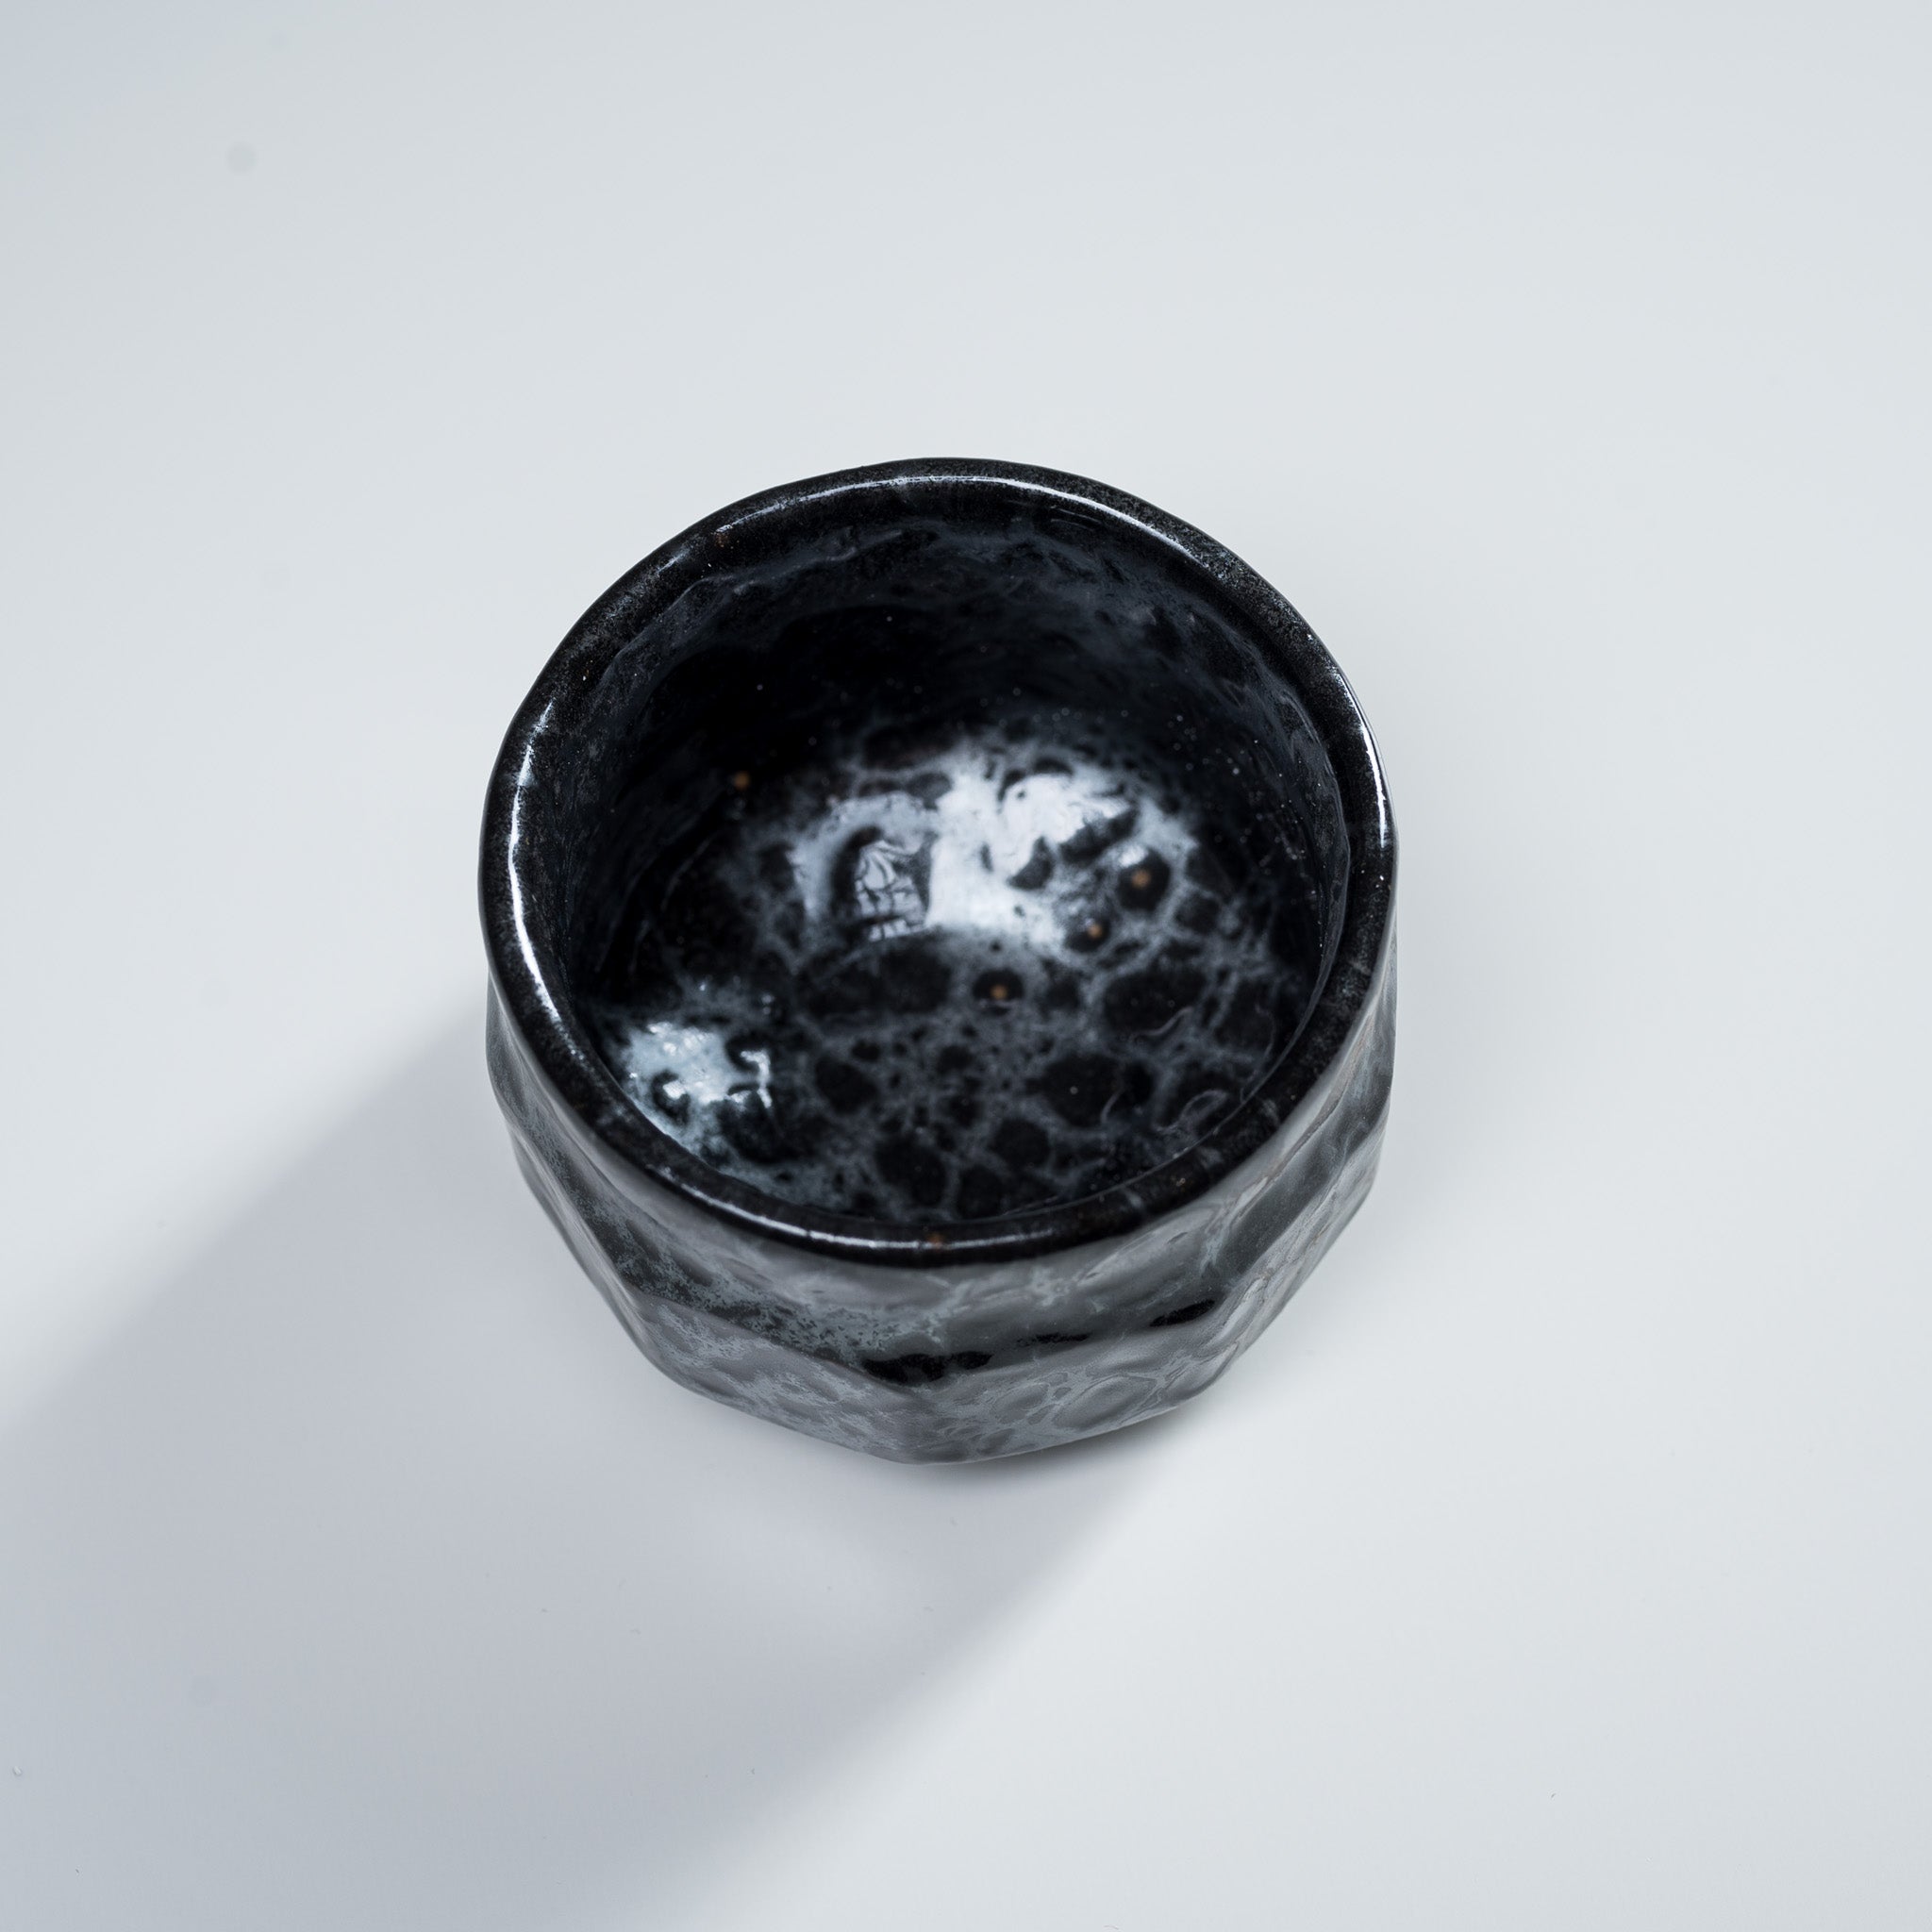 Mino ware Pottery Sake Cup / Teacup - Yuteki / 美濃焼き ぐい呑み